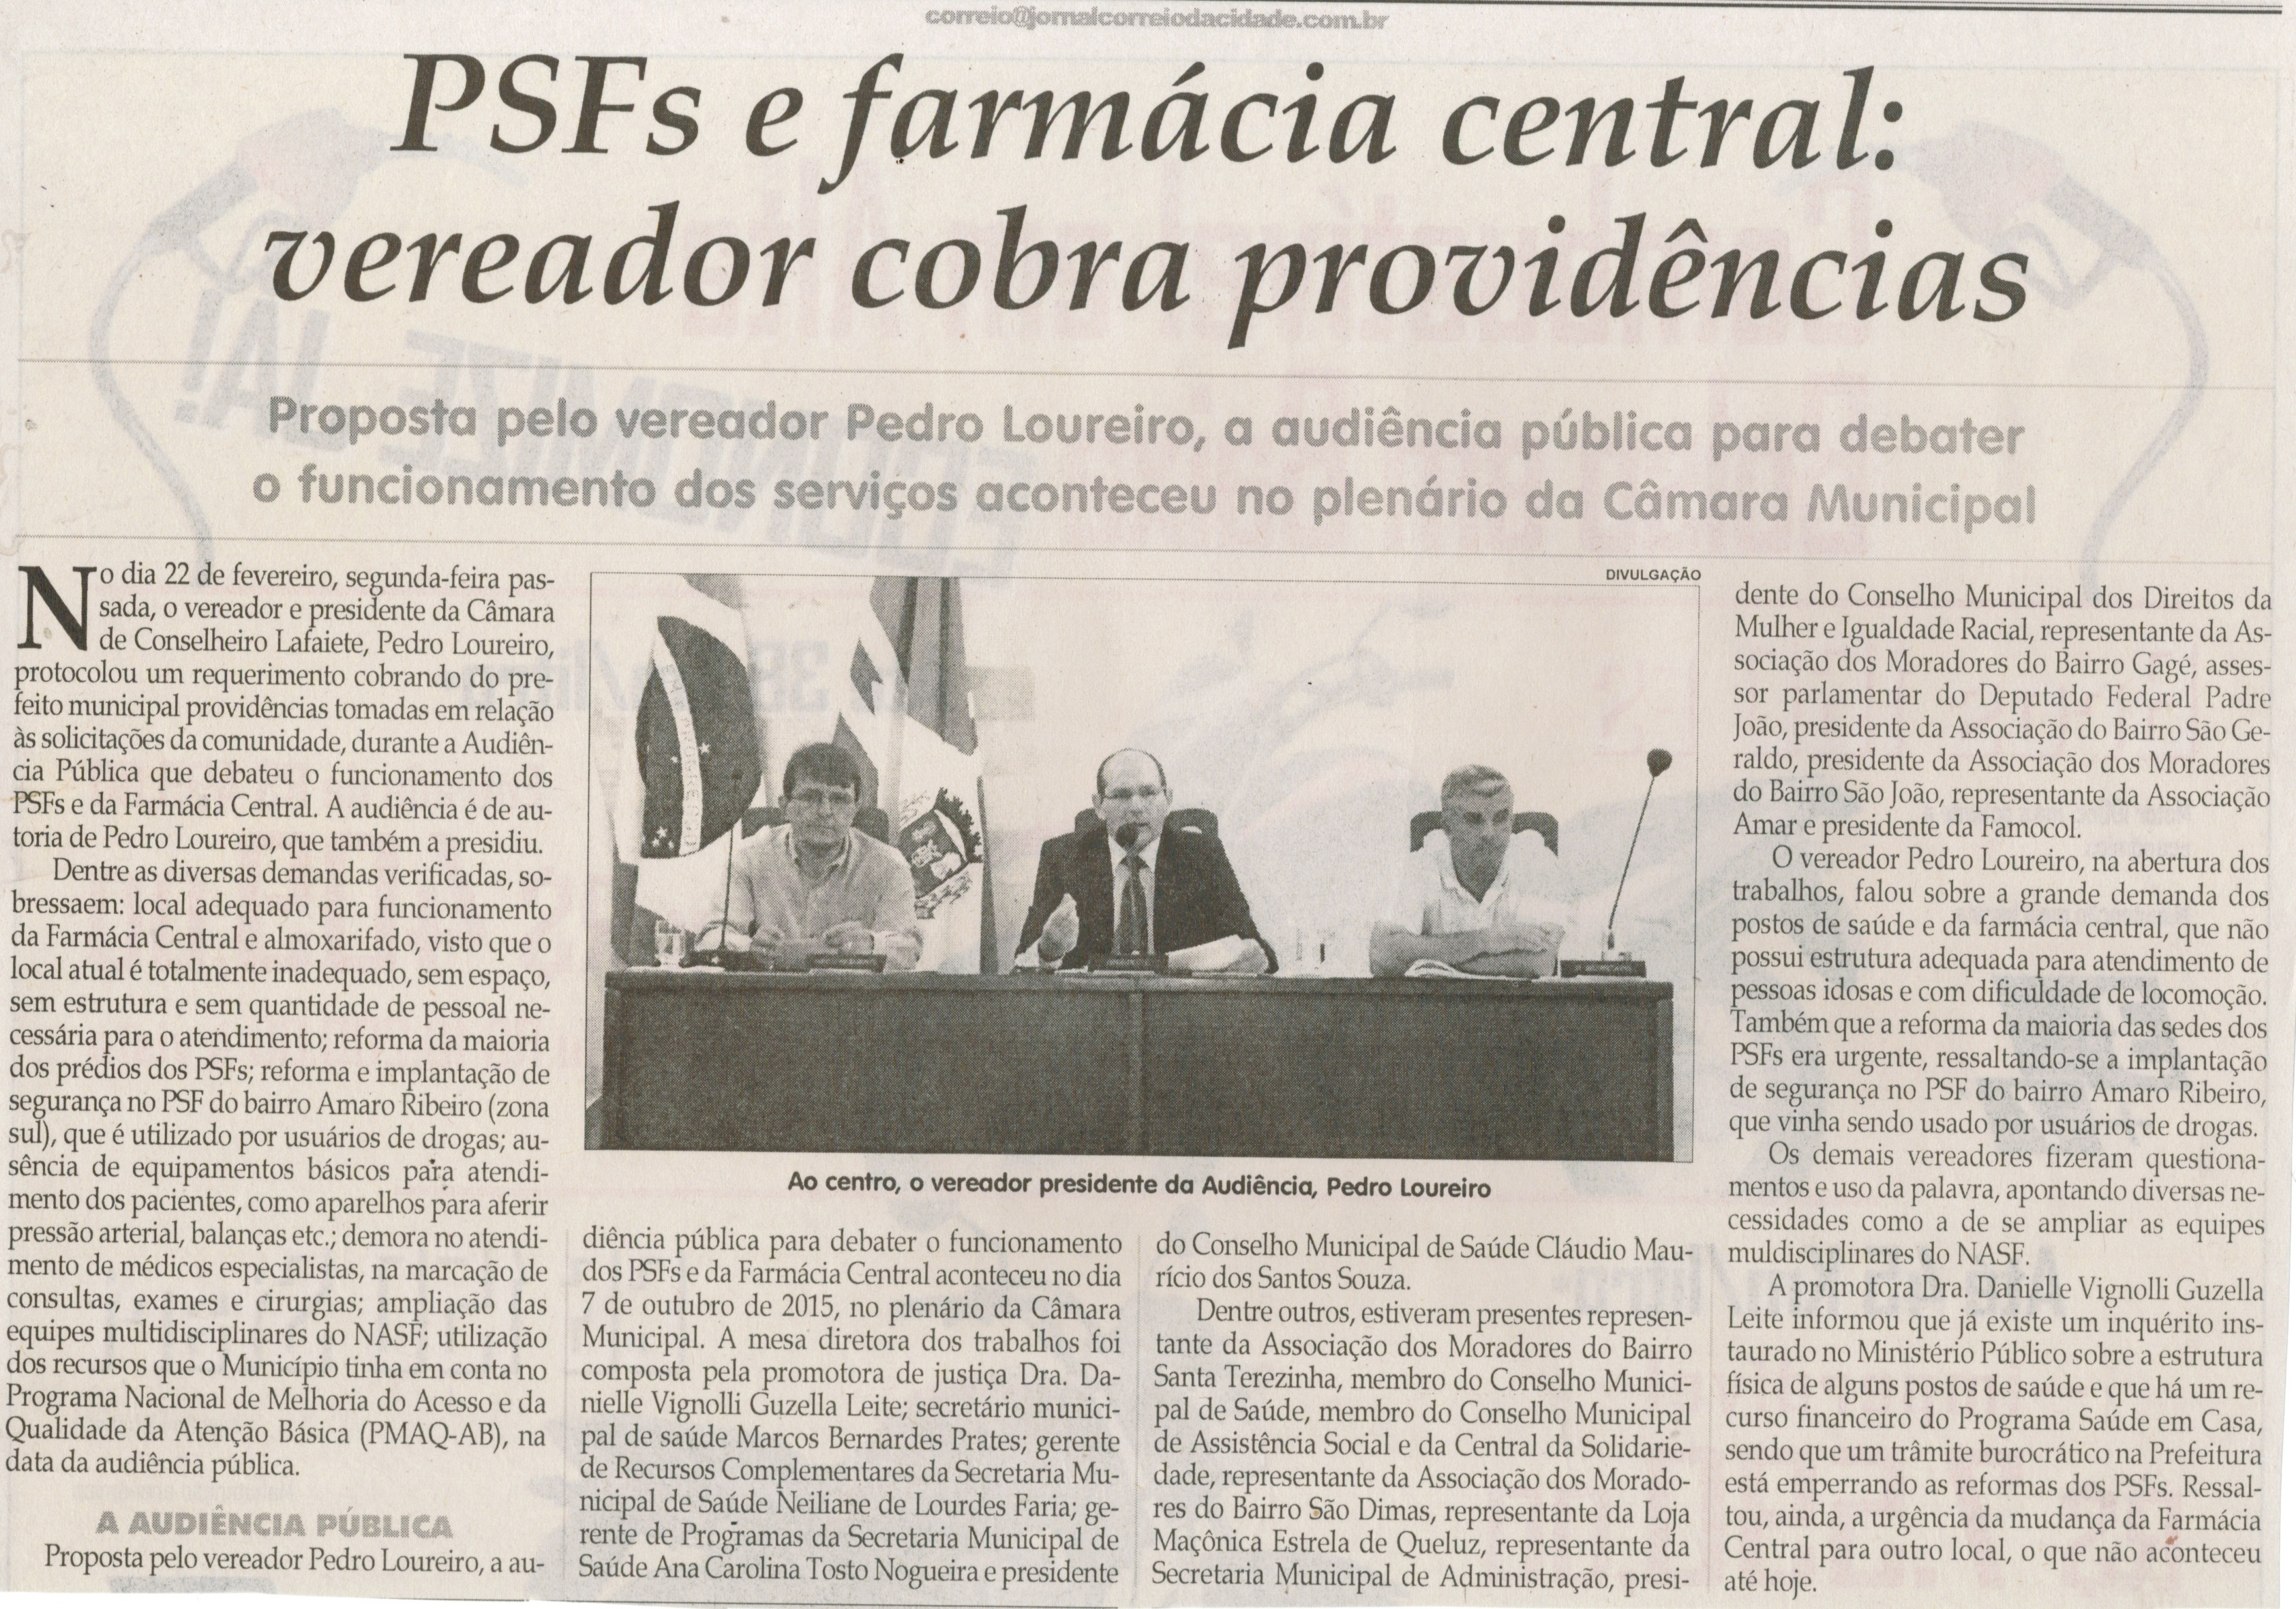  PSFs e farmácia central vereador cobra providências. Jornal Correio da Cidade, Conselheiro Lafaiete, 27 fev. 2016, 1306ª ed., Caderno Política, p. 4.